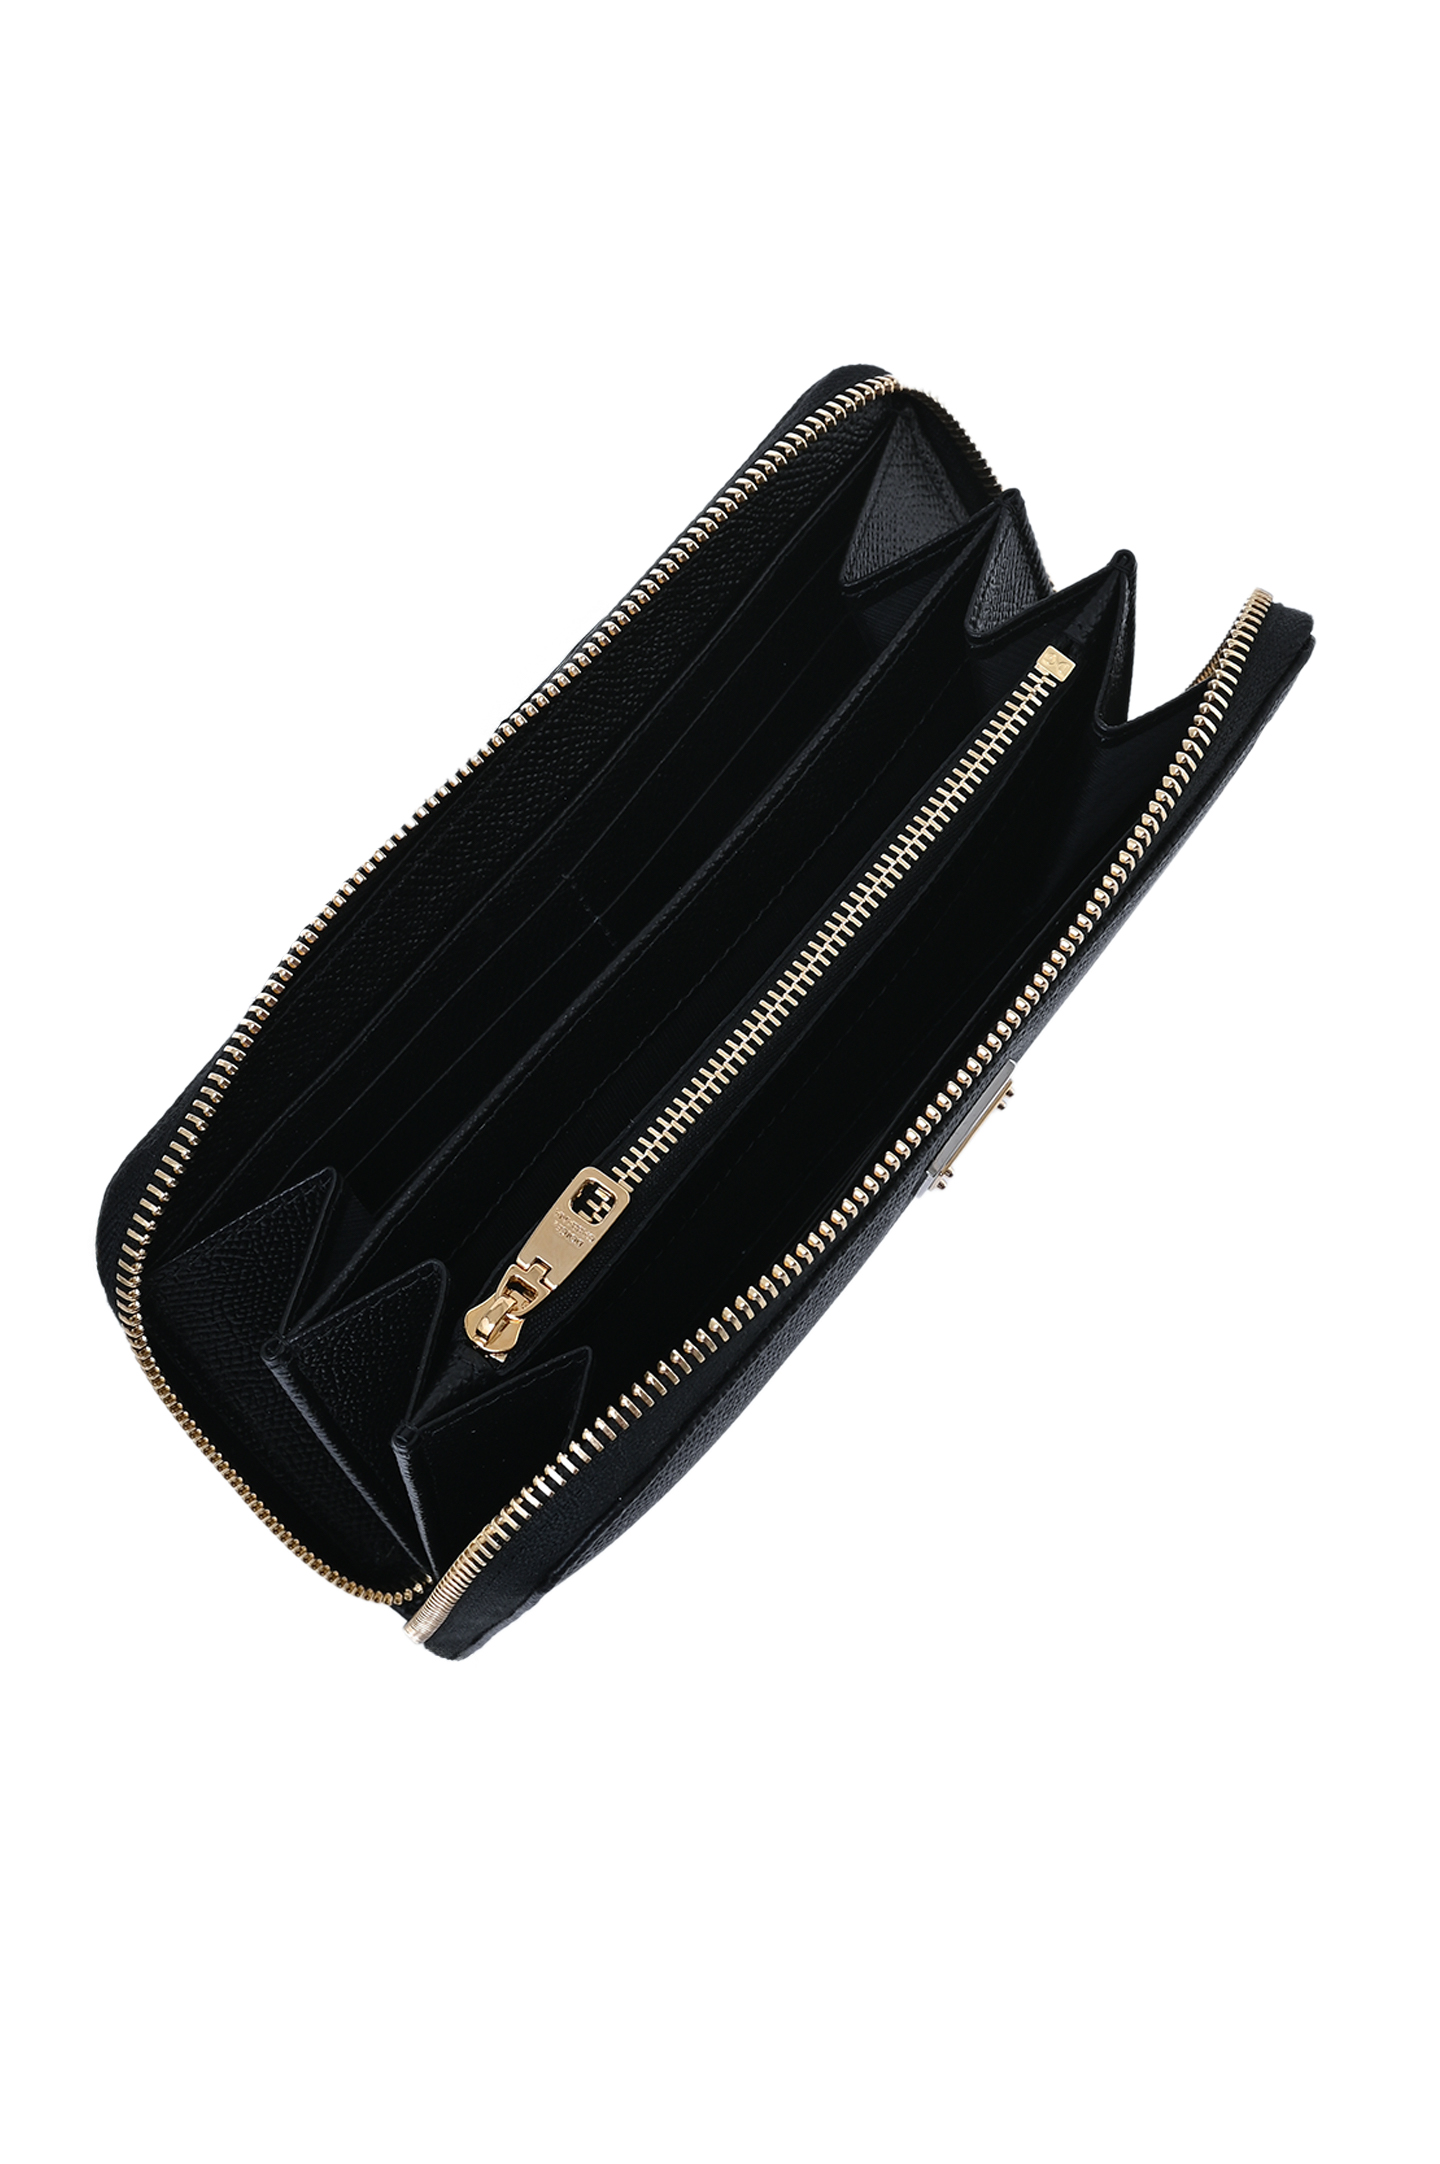 Кожаный кошелек с логотипом DOLCE & GABBANA BI0473 A1001, цвет: Черный, Женский